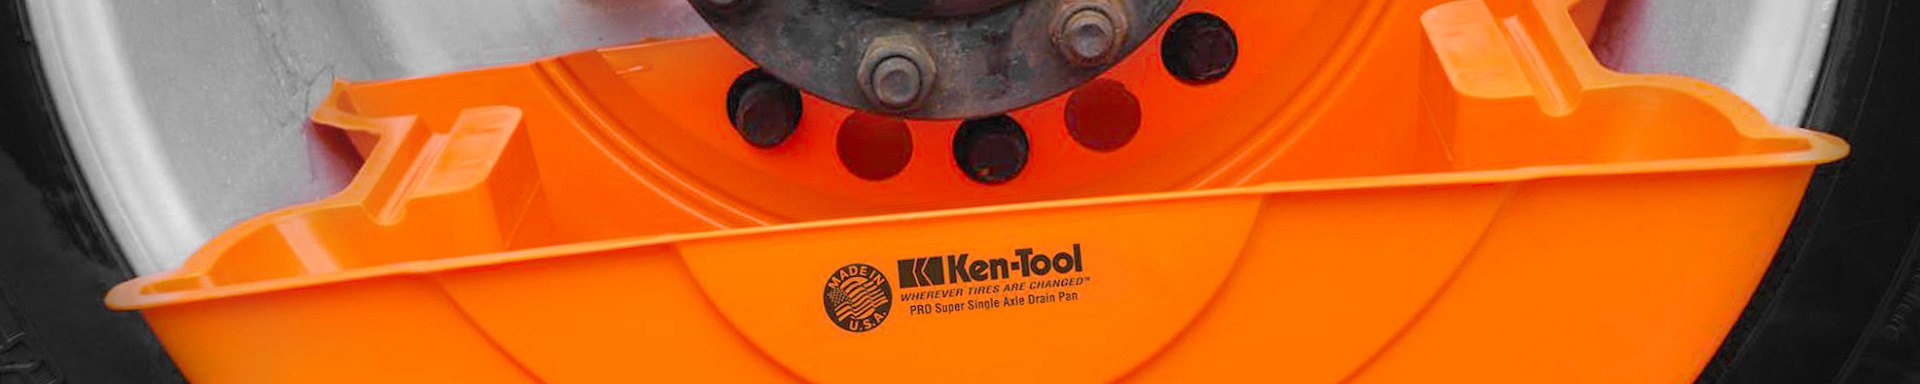 Ken-Tool Oil Change Tools